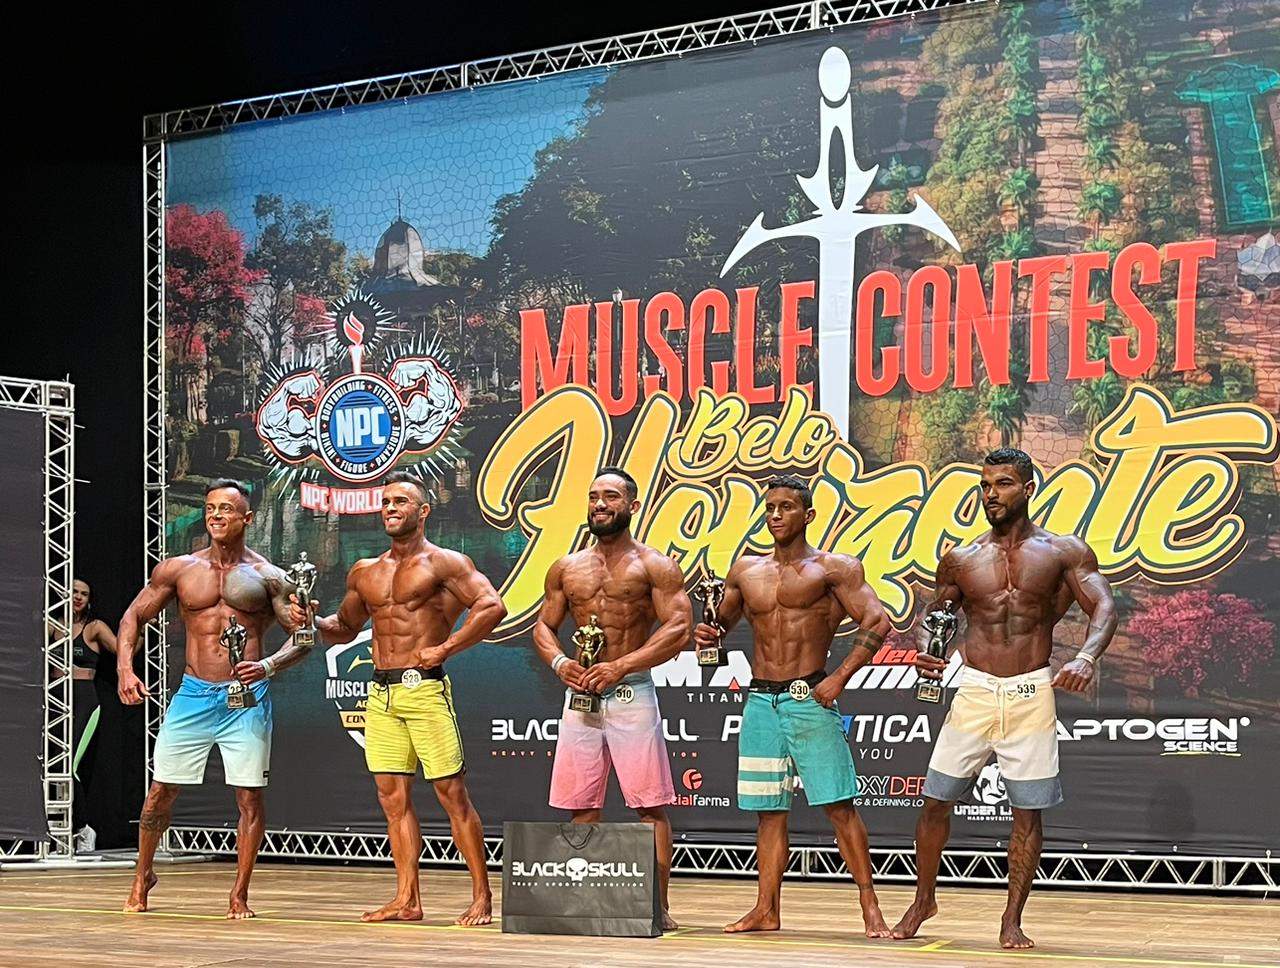 Atletas de Manhuaçu são destaque no campeonato de fisiculturismo Muscle Contest de Belo Horizonte